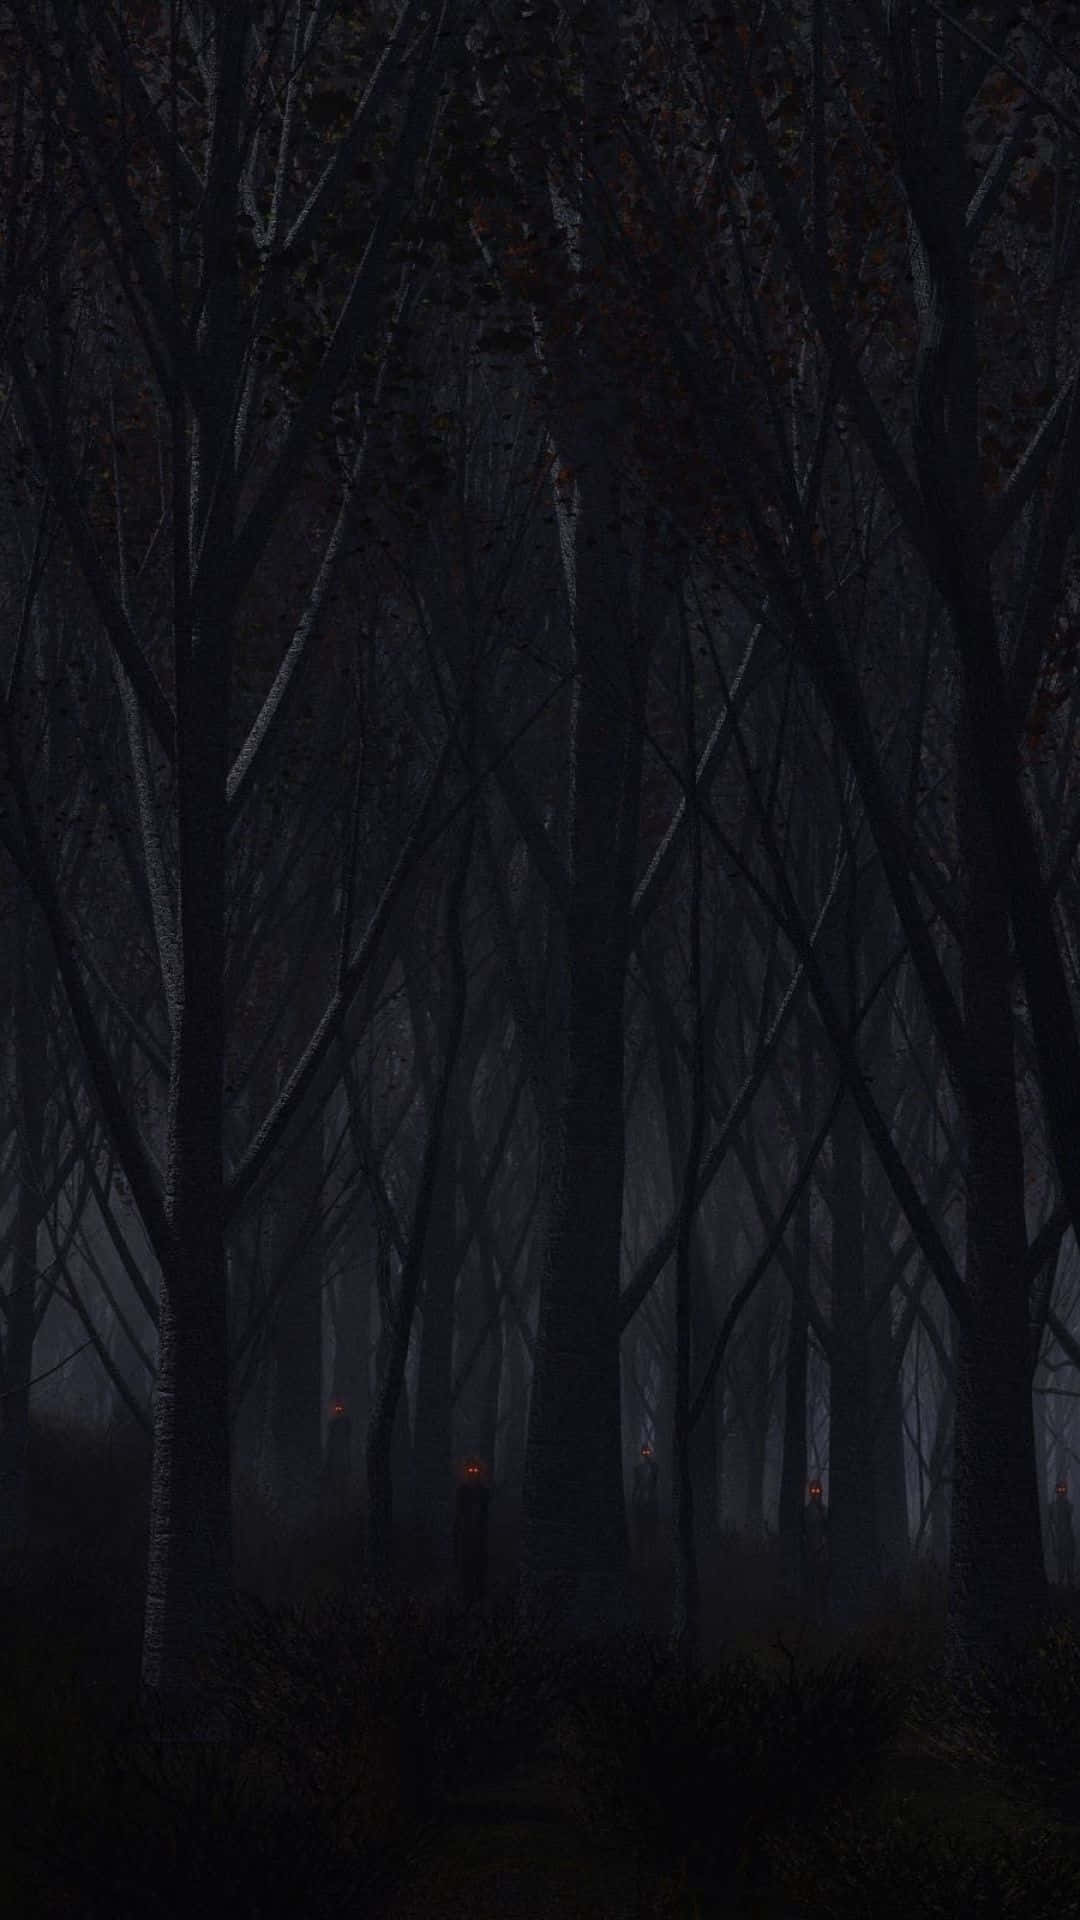 Enmörk Skog Med Träd Och En Lampa Wallpaper